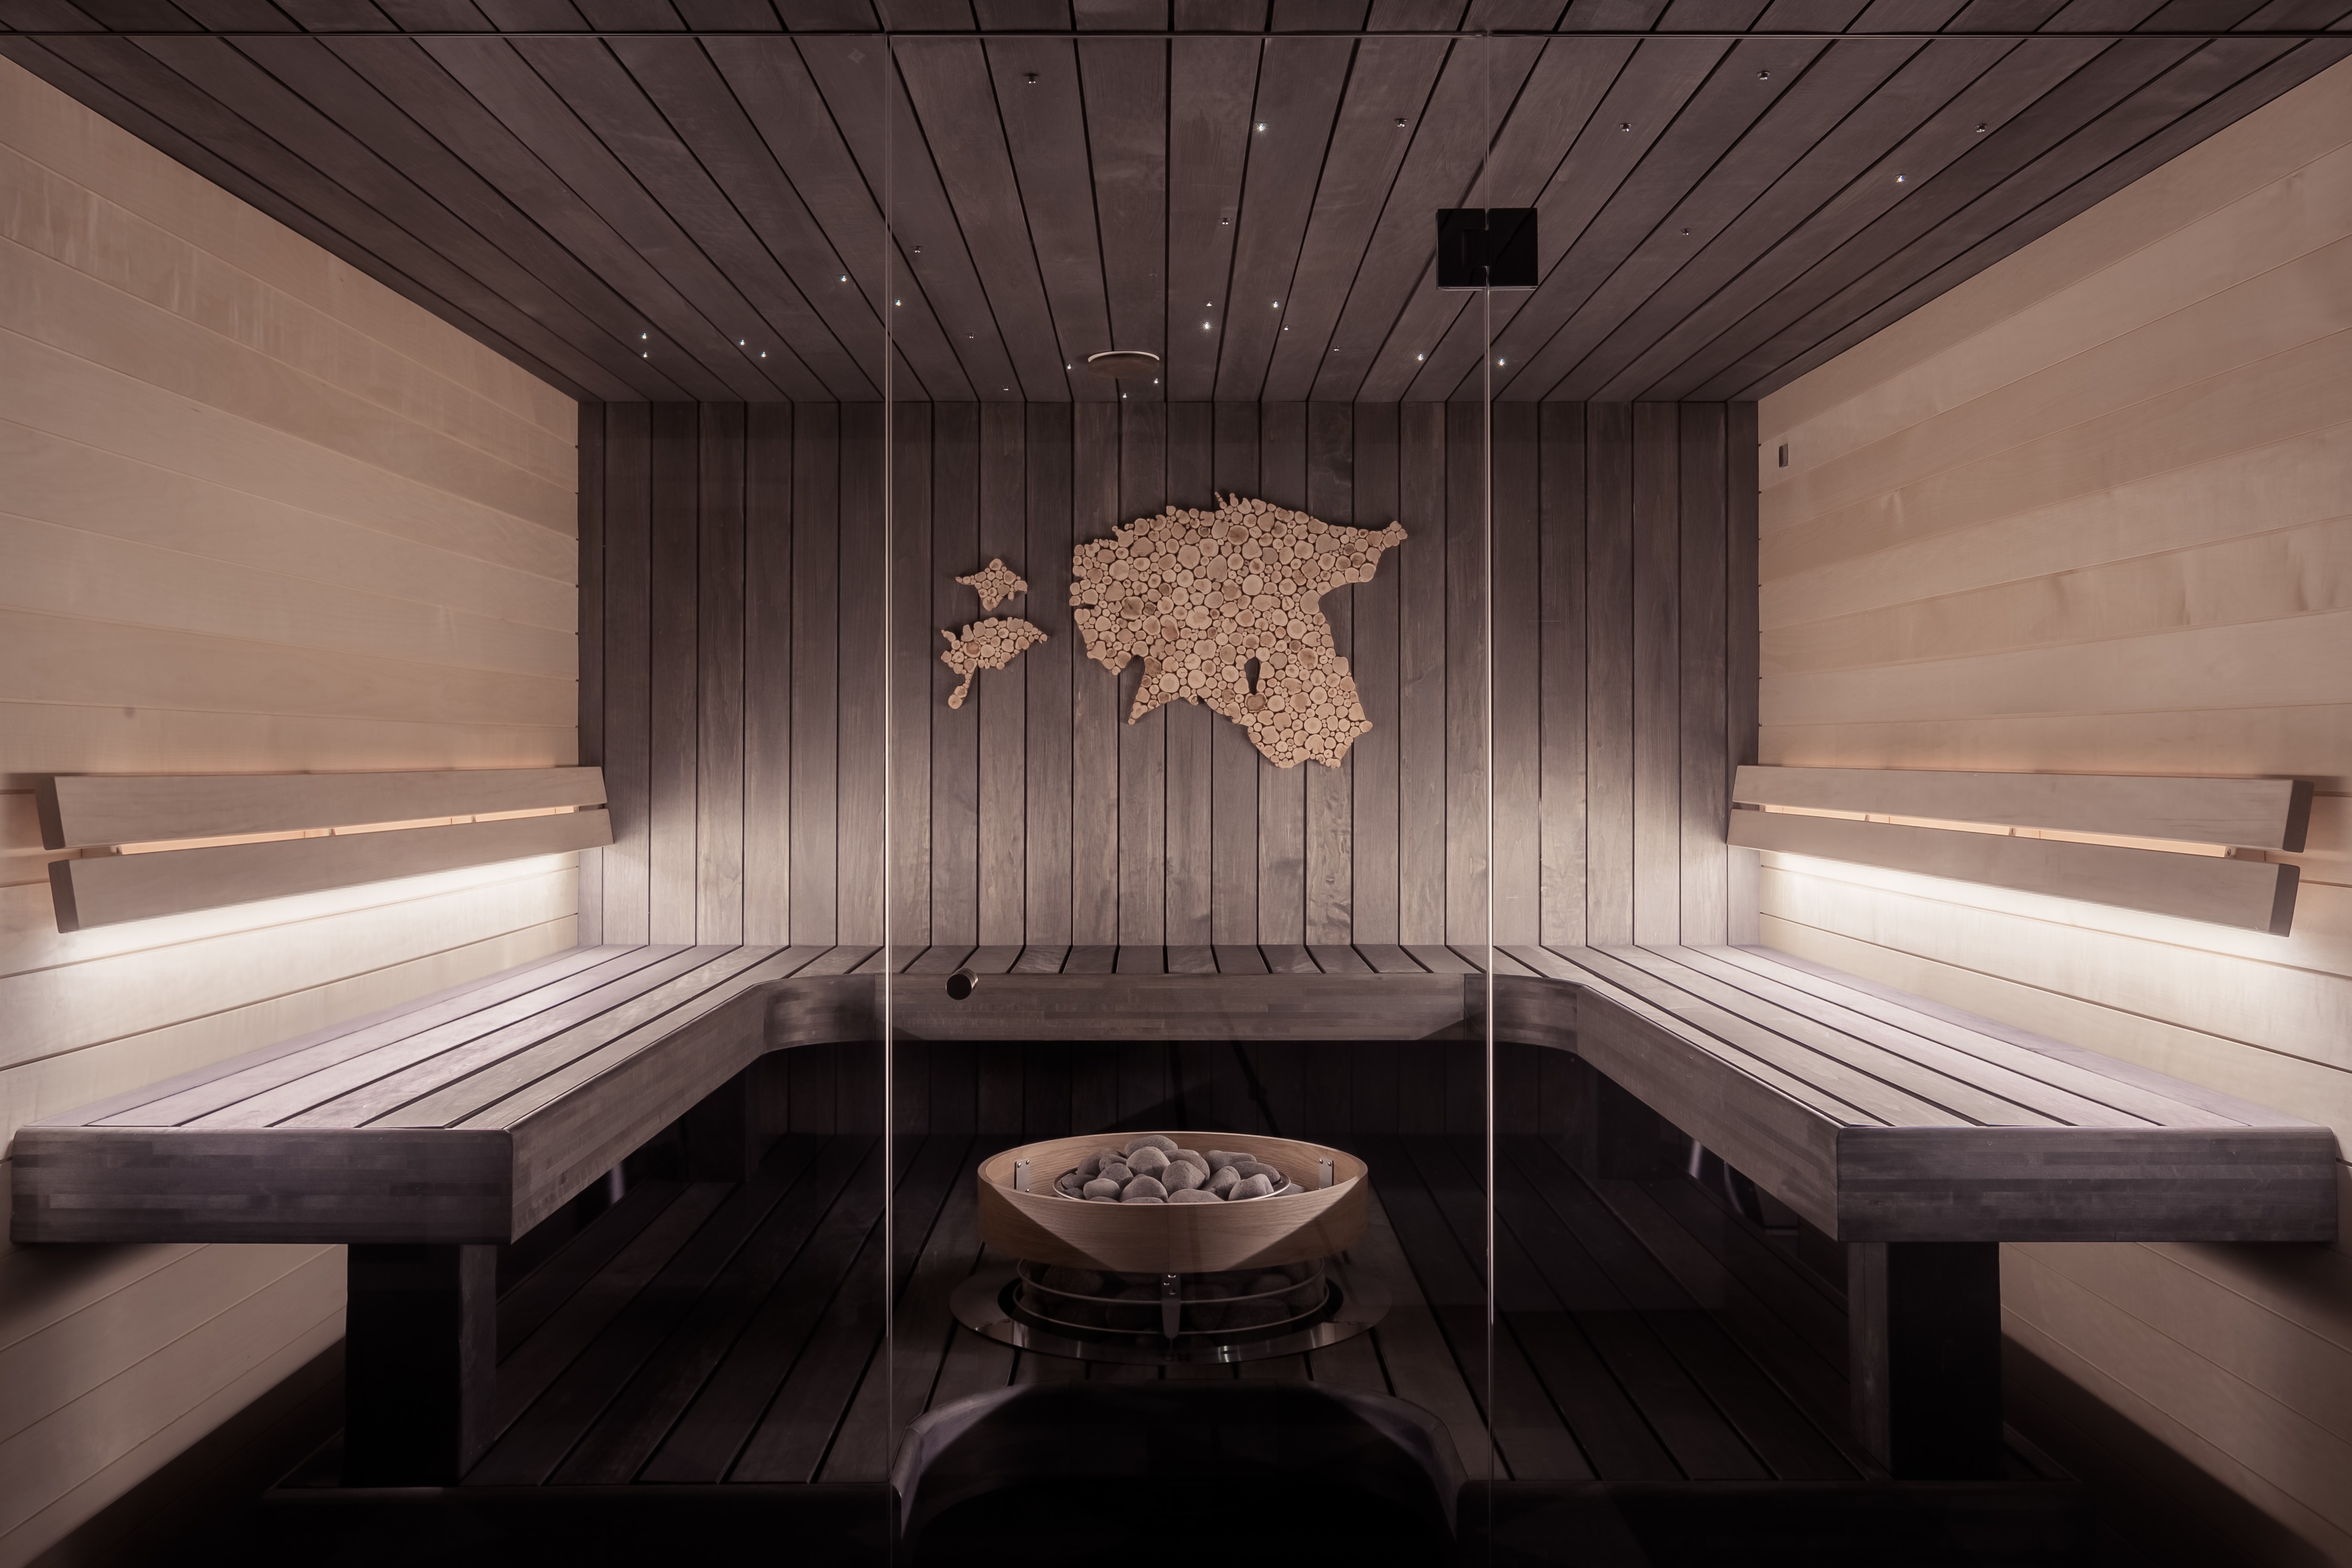 Také do sauny můžete pořídit stylové doplňky ve dřevěném nebo kamenném provedení